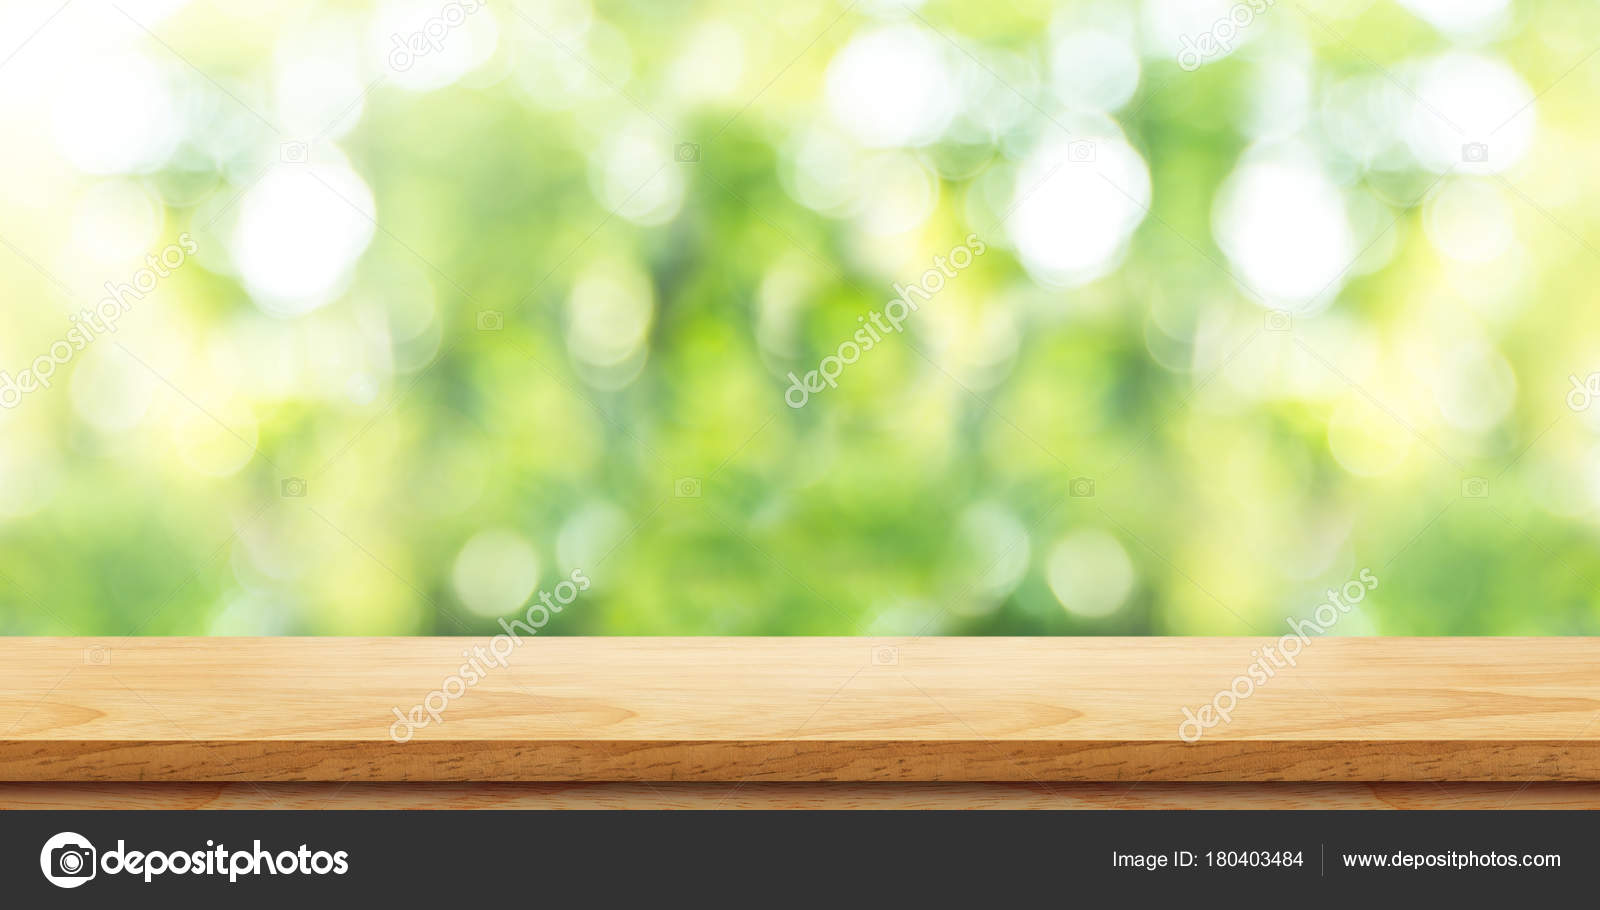 Đỉnh bàn gỗ màu nâu trống rỗng với nền tự nhiên mờ xanh lá cây sẽ là điểm nhấn tuyệt vời cho phòng khách hay phòng làm việc. Với vẻ ngoài sang trọng và đẳng cấp, đây sẽ là nơi lý tưởng để bạn thư giãn và giải trí sau những giờ làm việc căng thẳng.